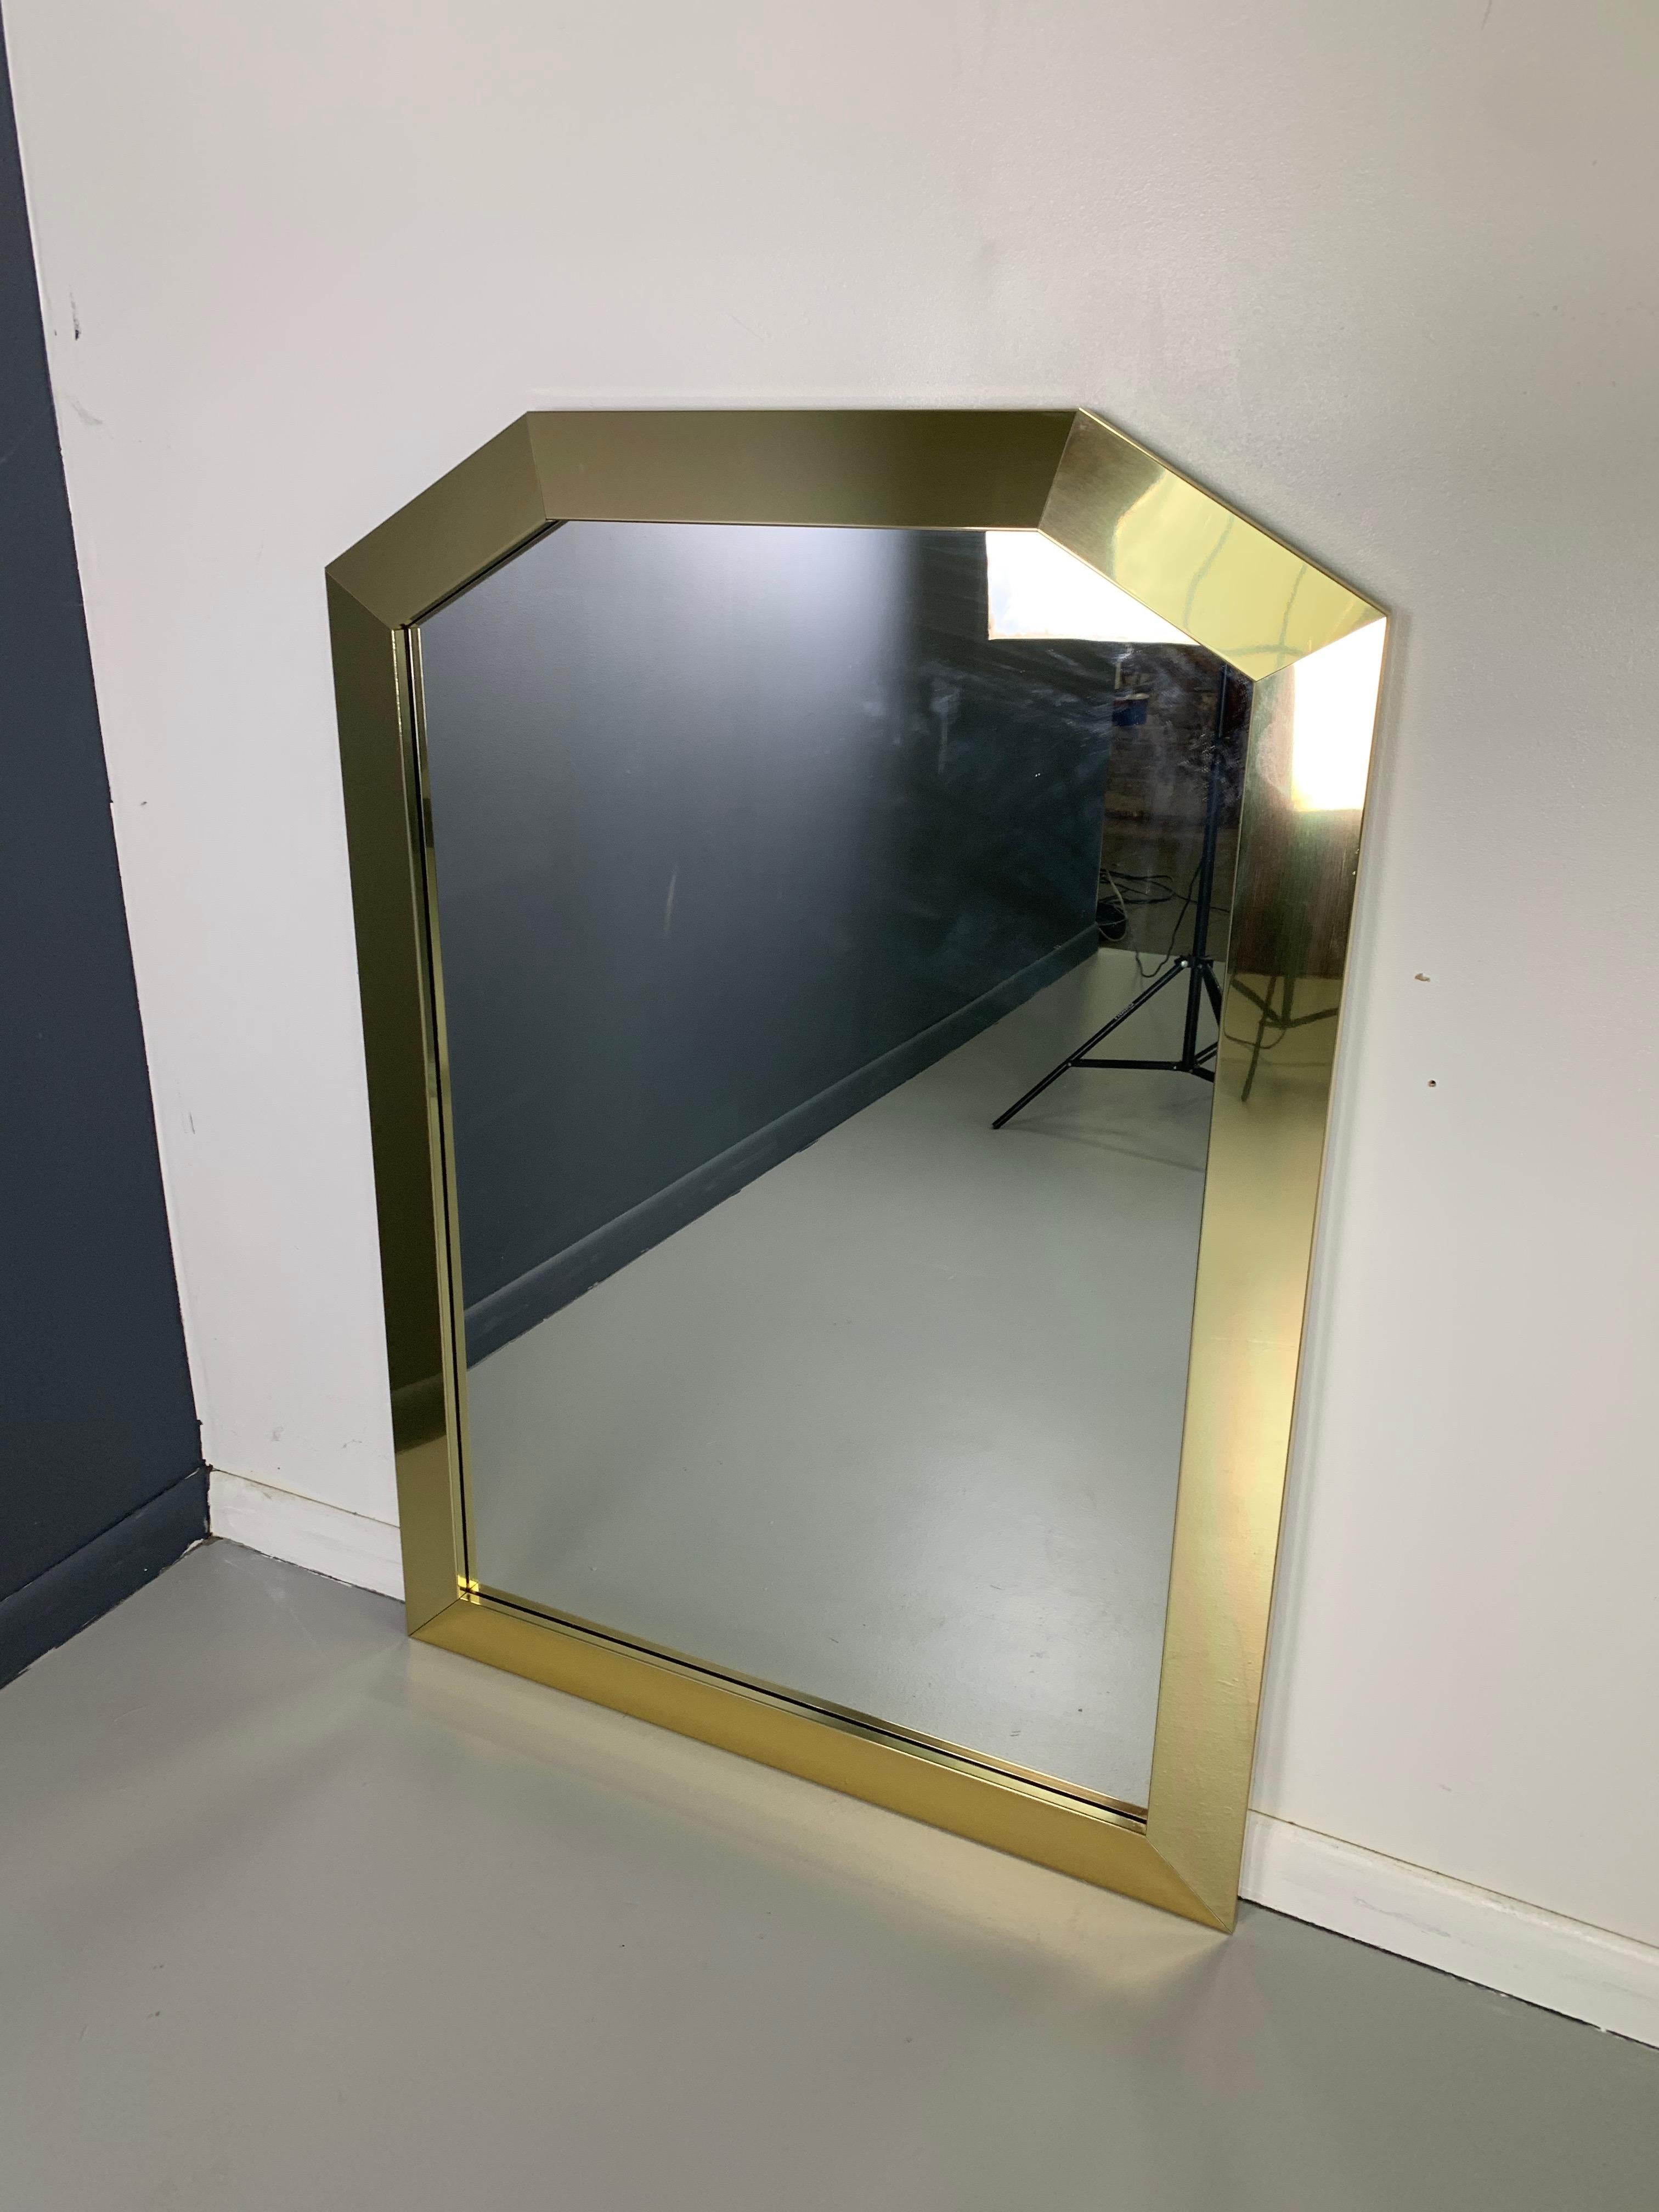 Cet impressionnant miroir encadré en laiton a un cadre épais en laiton et est fait avec une merveilleuse qualité, lourd et en grand état.

Ce miroir montre l'influence d'artistes des années 1980 tels que Paul Evans et Curtis Jere.